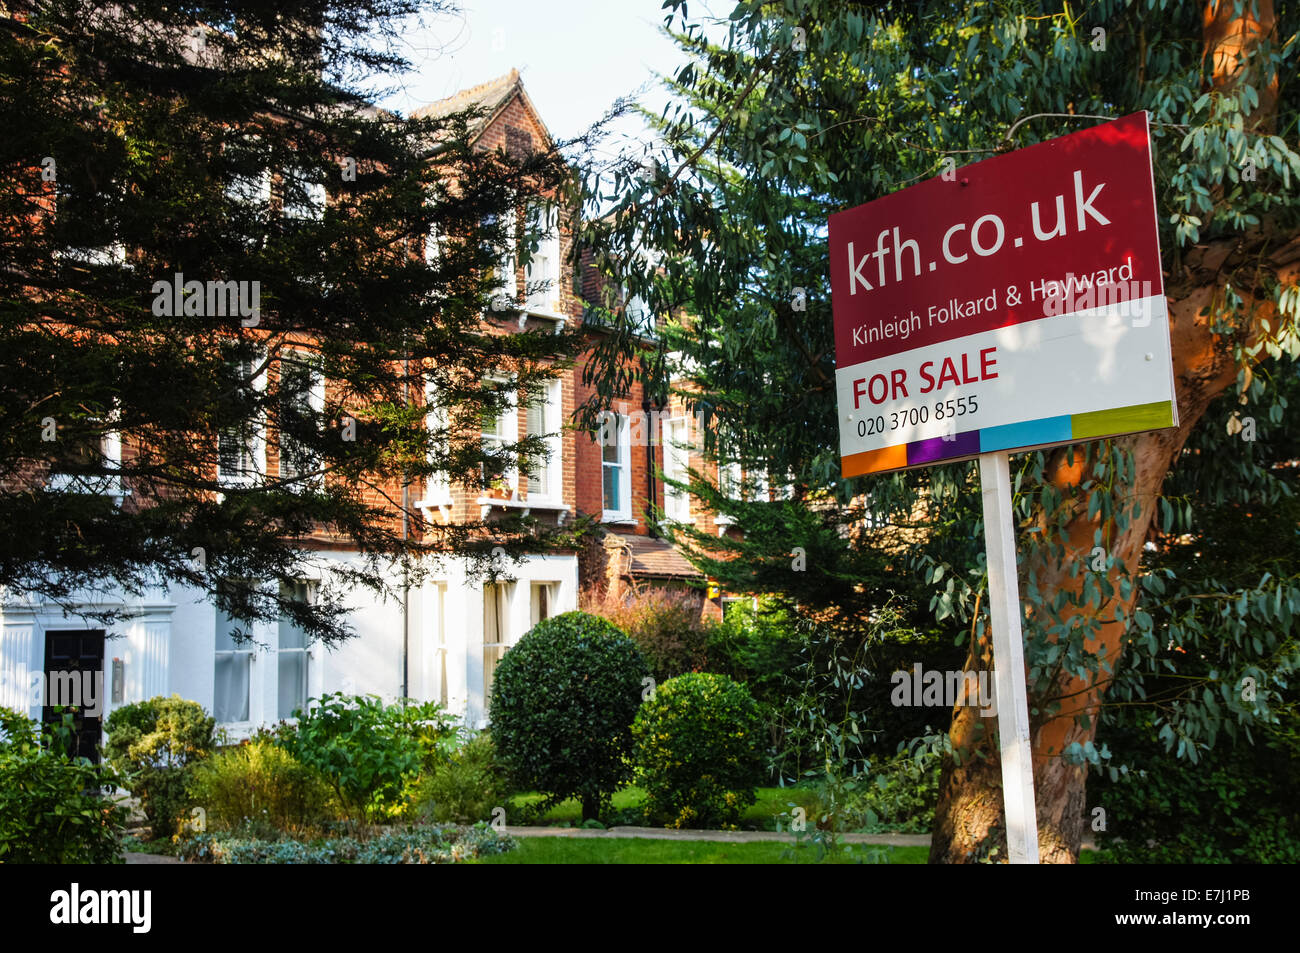 Un panneau immobilier à vendre à l'extérieur des maisons mitoyennes Londres du Sud Angleterre Royaume-Uni Royaume-Uni Banque D'Images